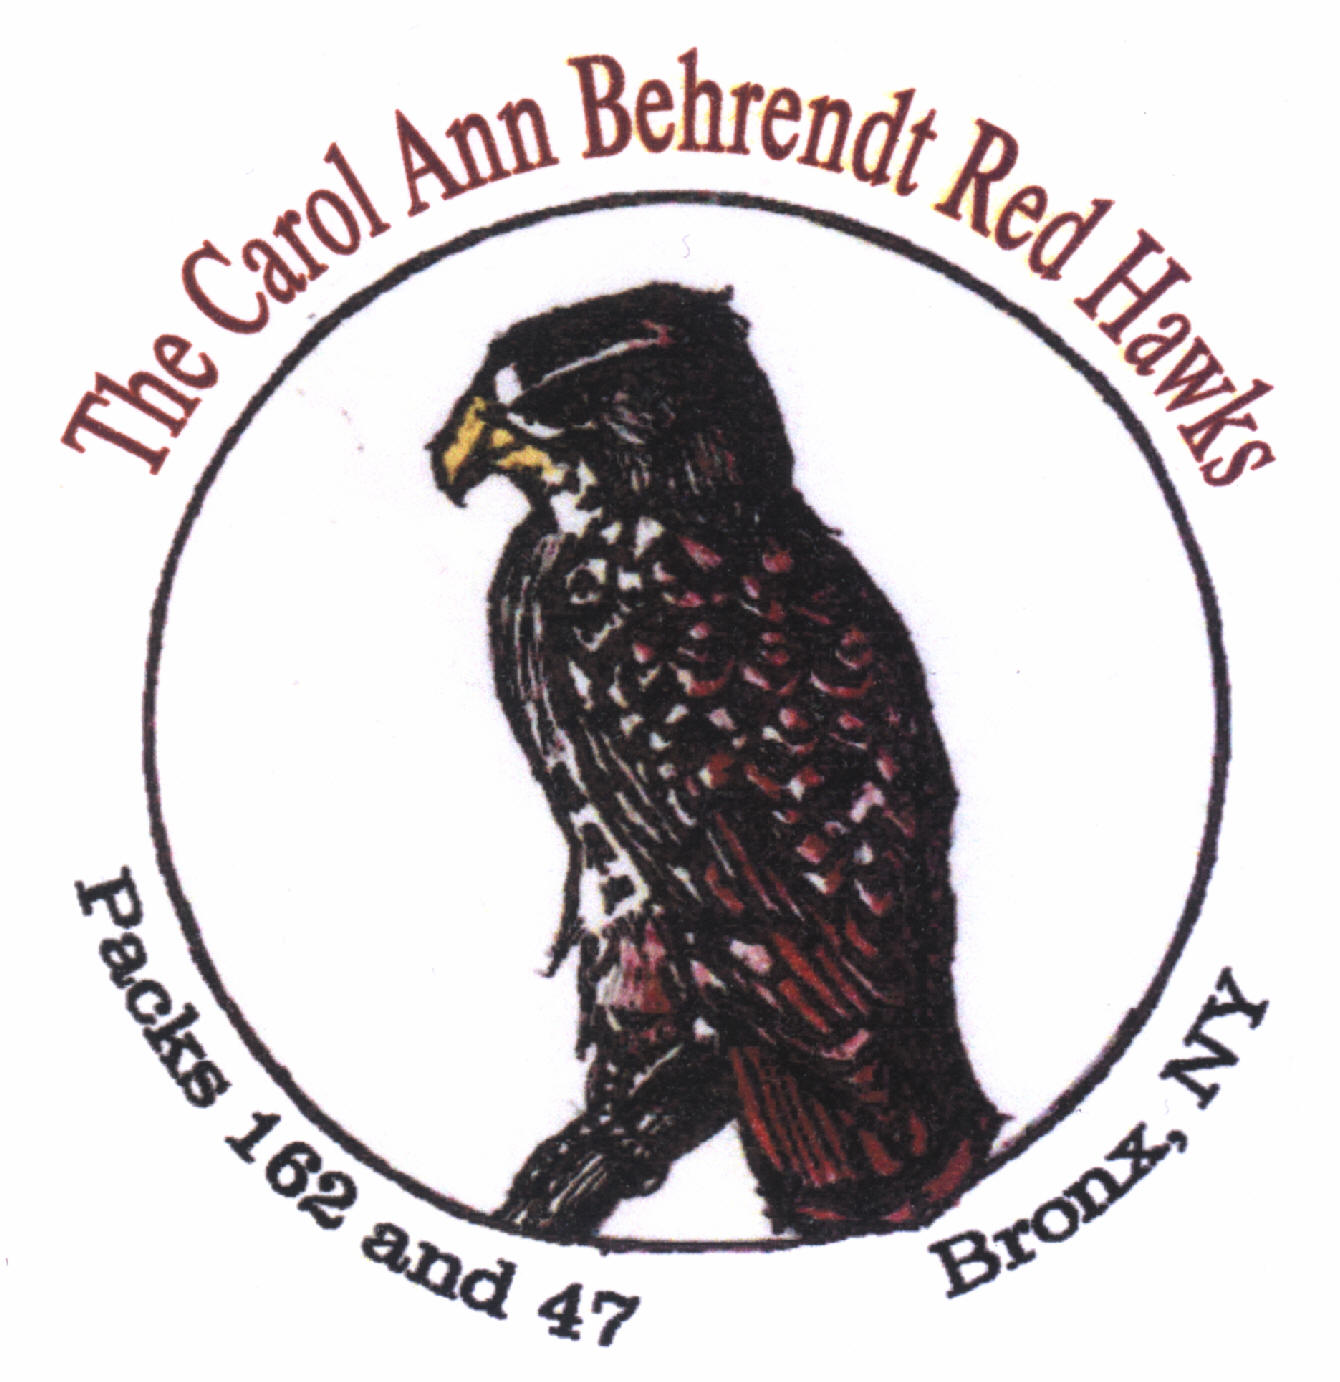 Carol Ann Behrendt Pack 162/47 Red Hawks